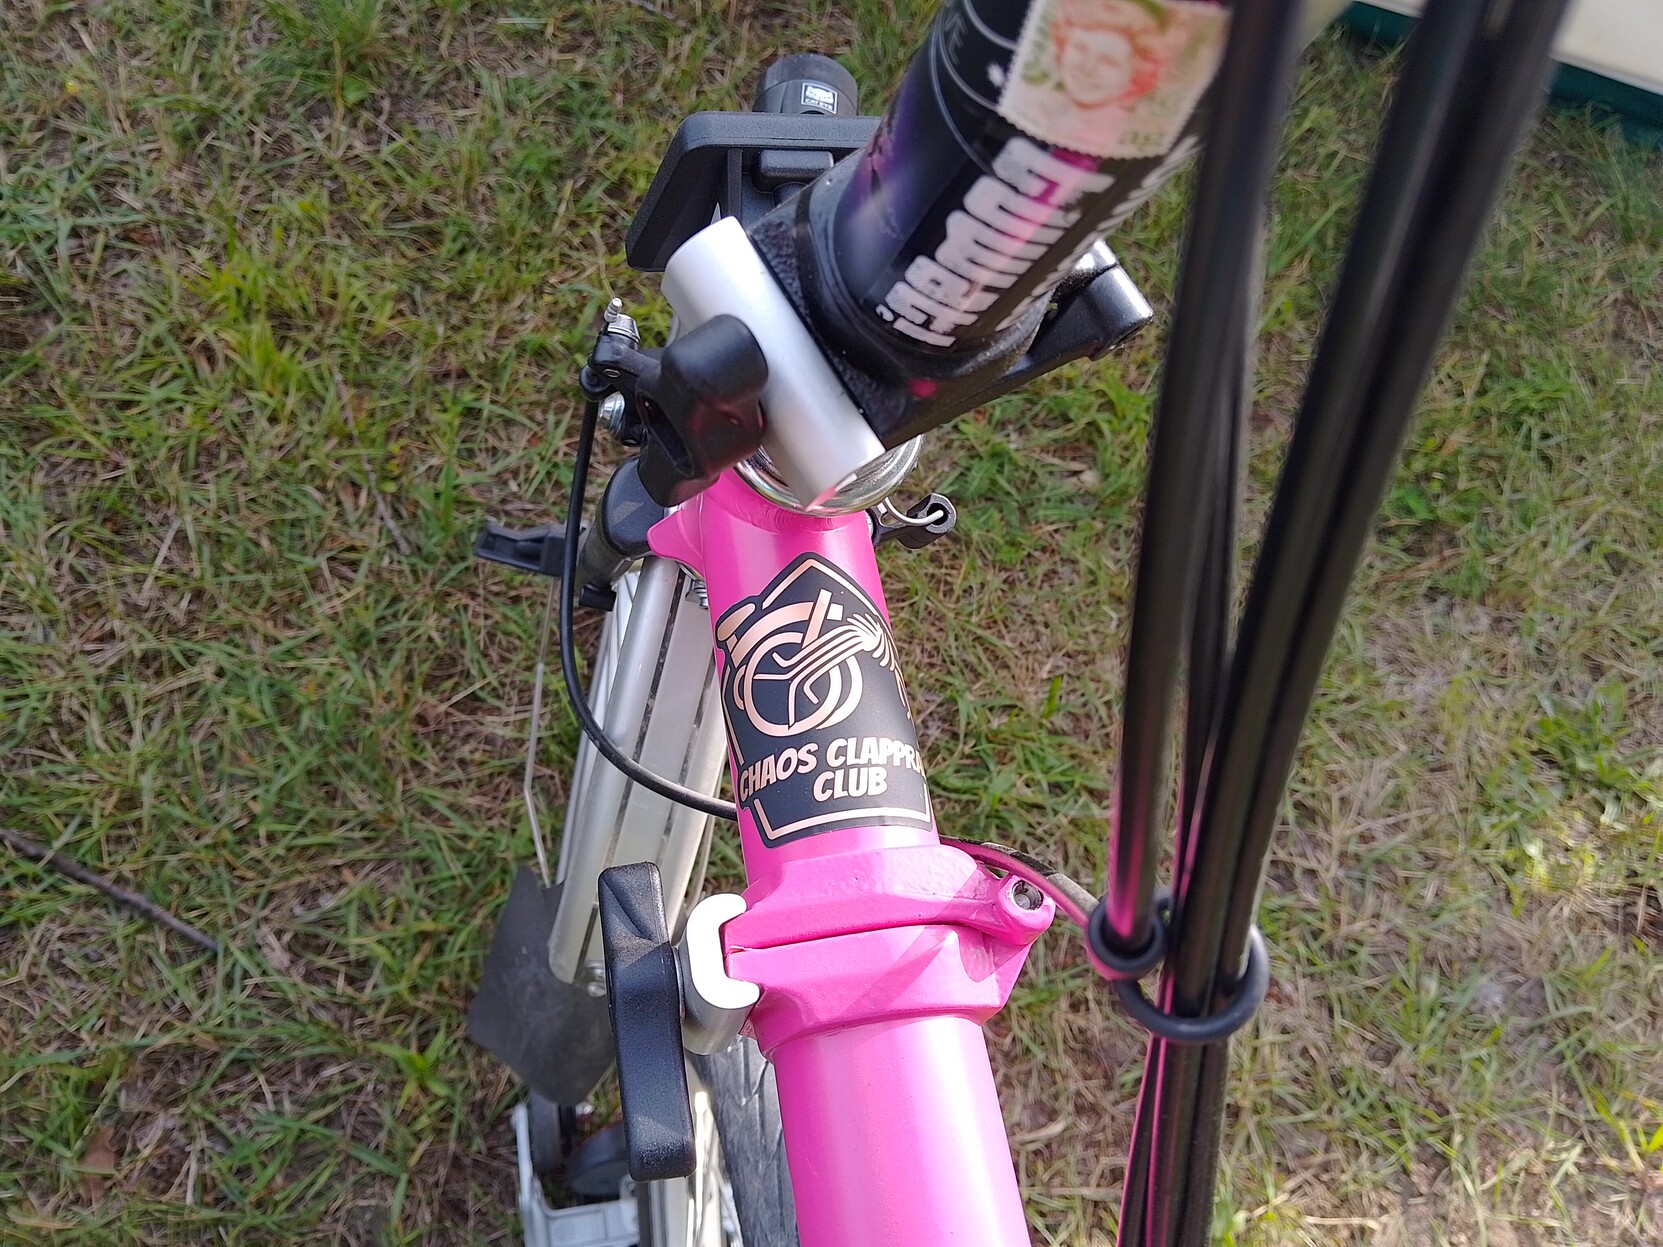 Pinkes Brompton Fahrrad mit dem zuvorgenannten Sticker